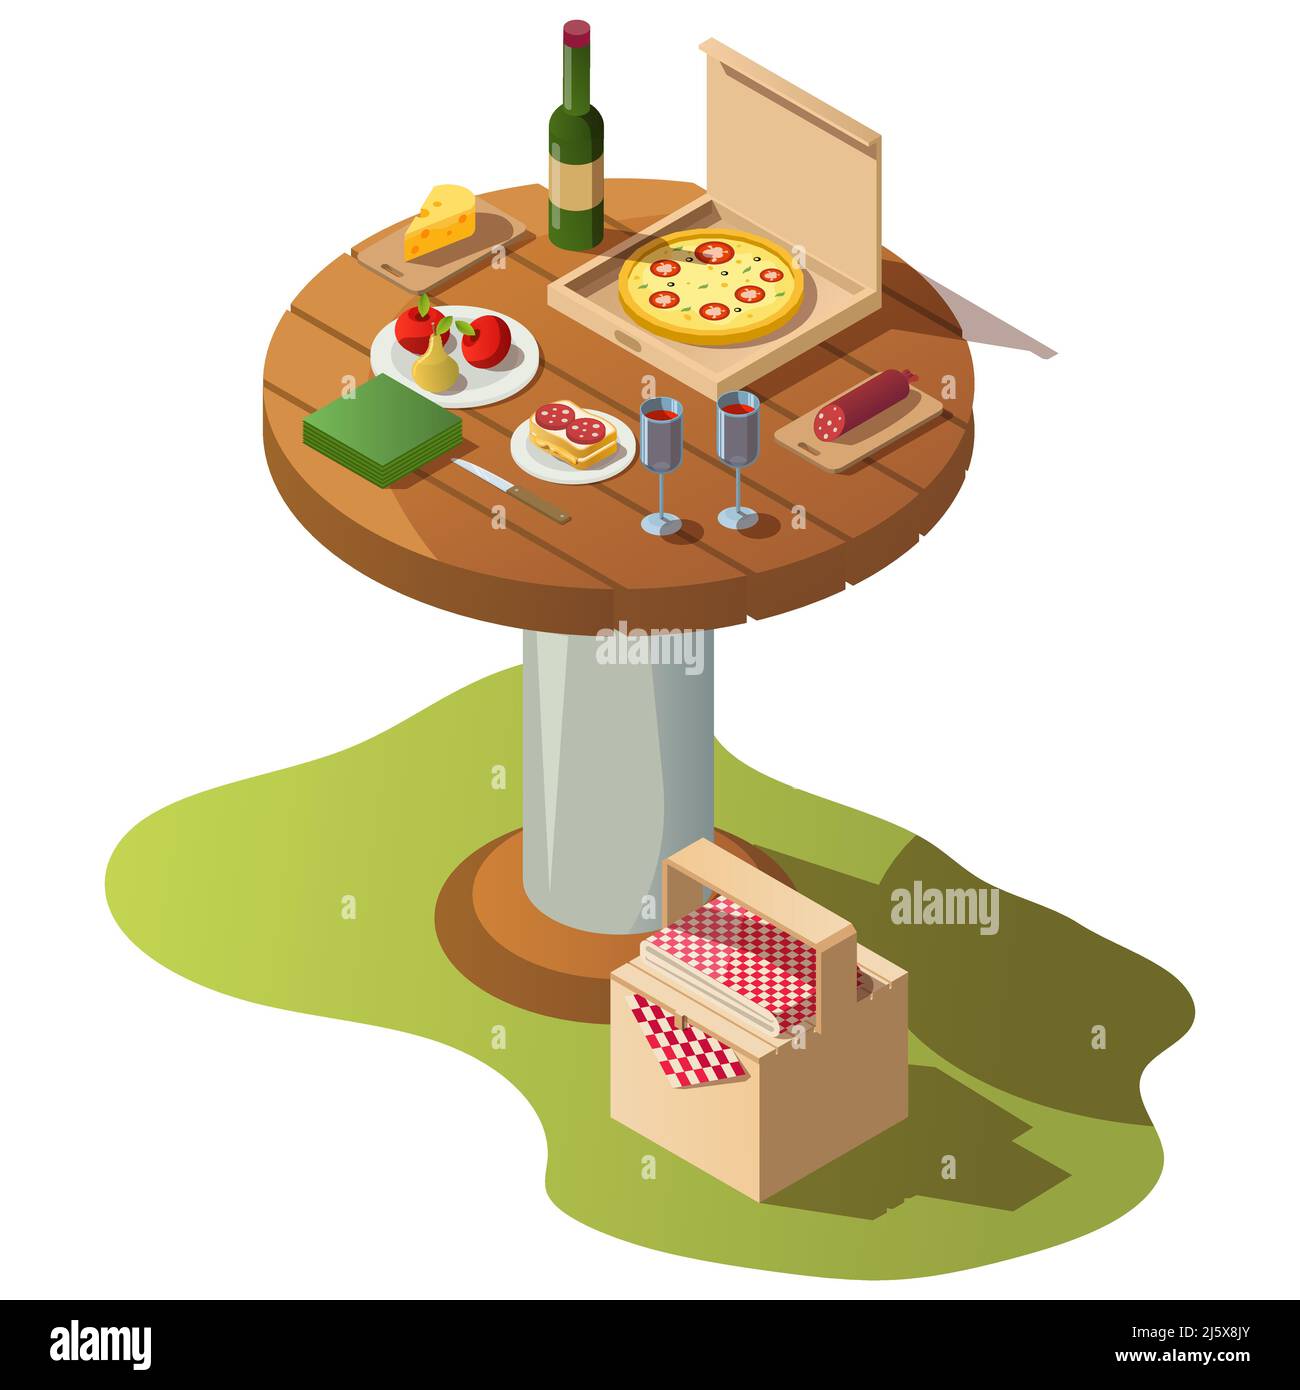 Isometrischer runder Holztisch für Picknick mit Essen, Pizzabox und Korb auf Gras. Vektor-Illustration von frischem Essen, Obst, Weinflasche mit Gläsern Stock Vektor